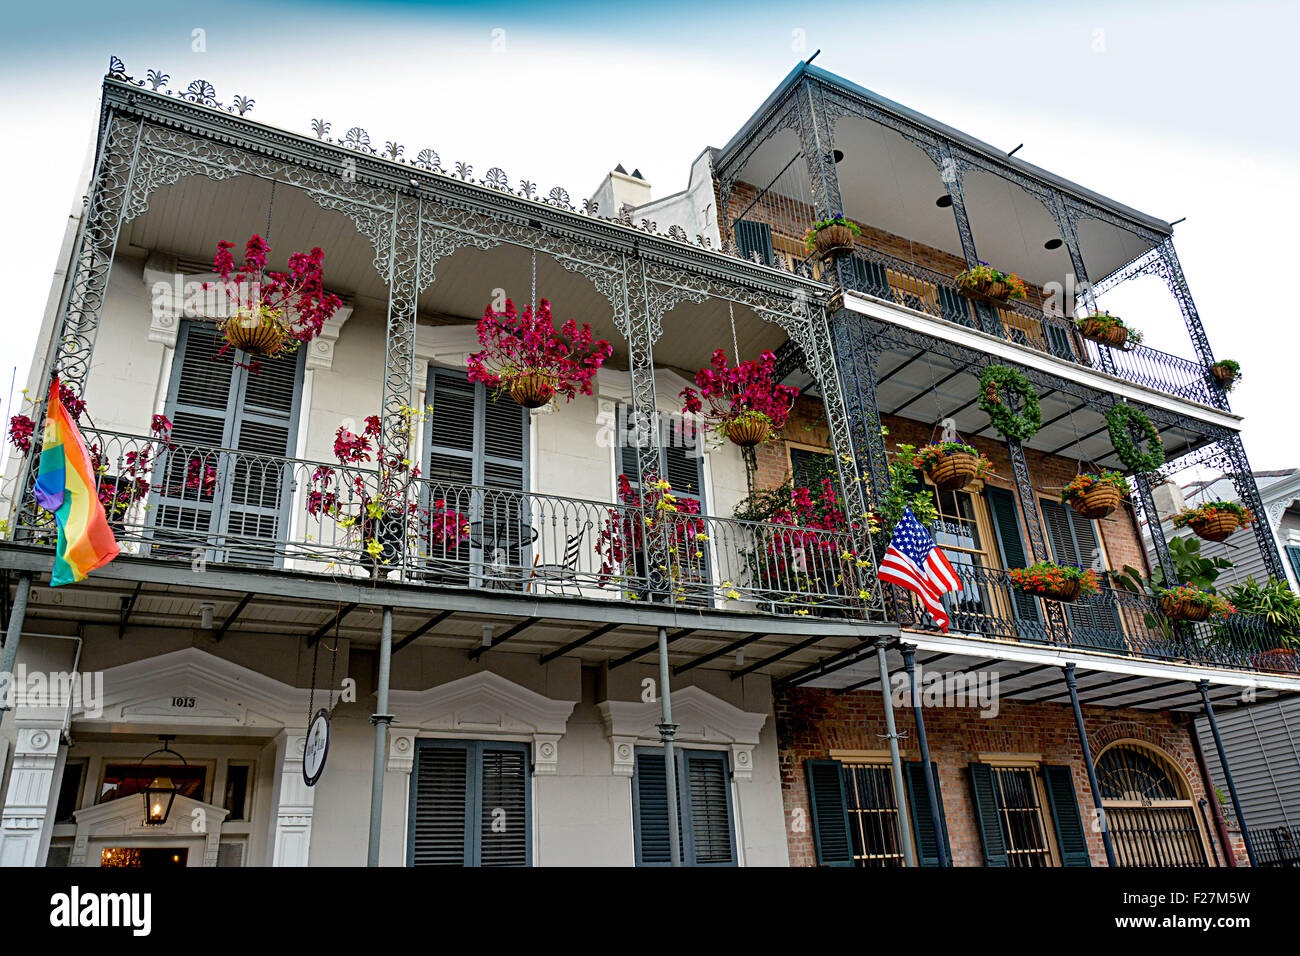 Eine Creole Stadthaus mit reich verzierten schmiedeeisernen Balkonen, hängenden Blüten und Regenbogenfahne im French Quarter von New Orleans, LA Stockfoto